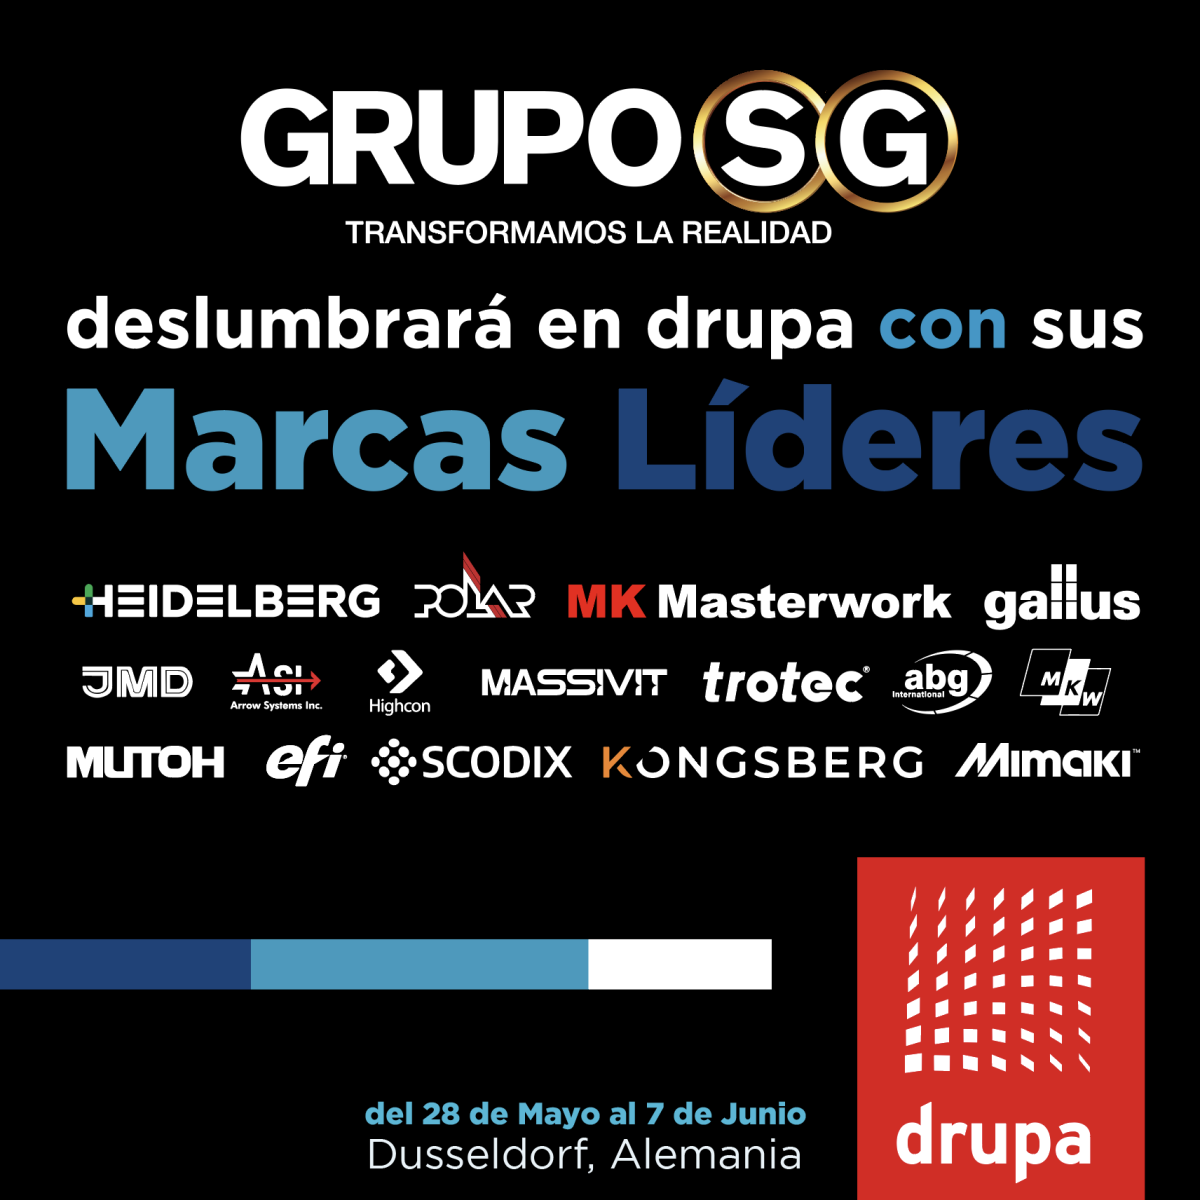 Grupo SG deslumbrará en drupa con sus marcas líderes | Del 28 de mayo al 7 de junio -Dusseldorf, Alemania